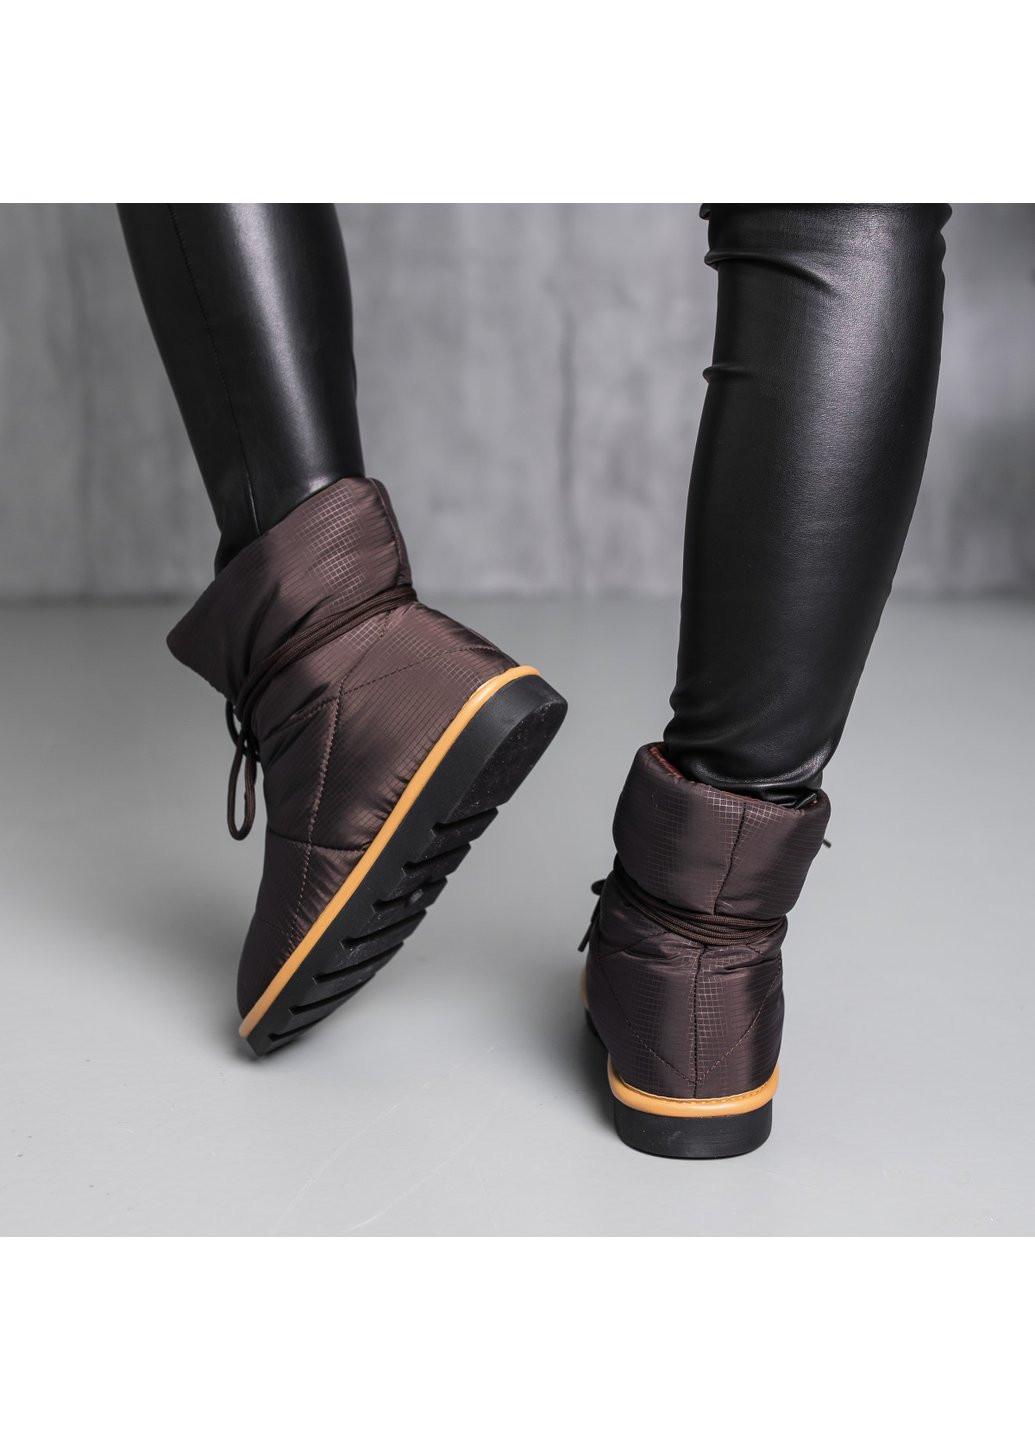 Зимние ботинки дутики женские jigsaw 3883 235 коричневый Fashion тканевые